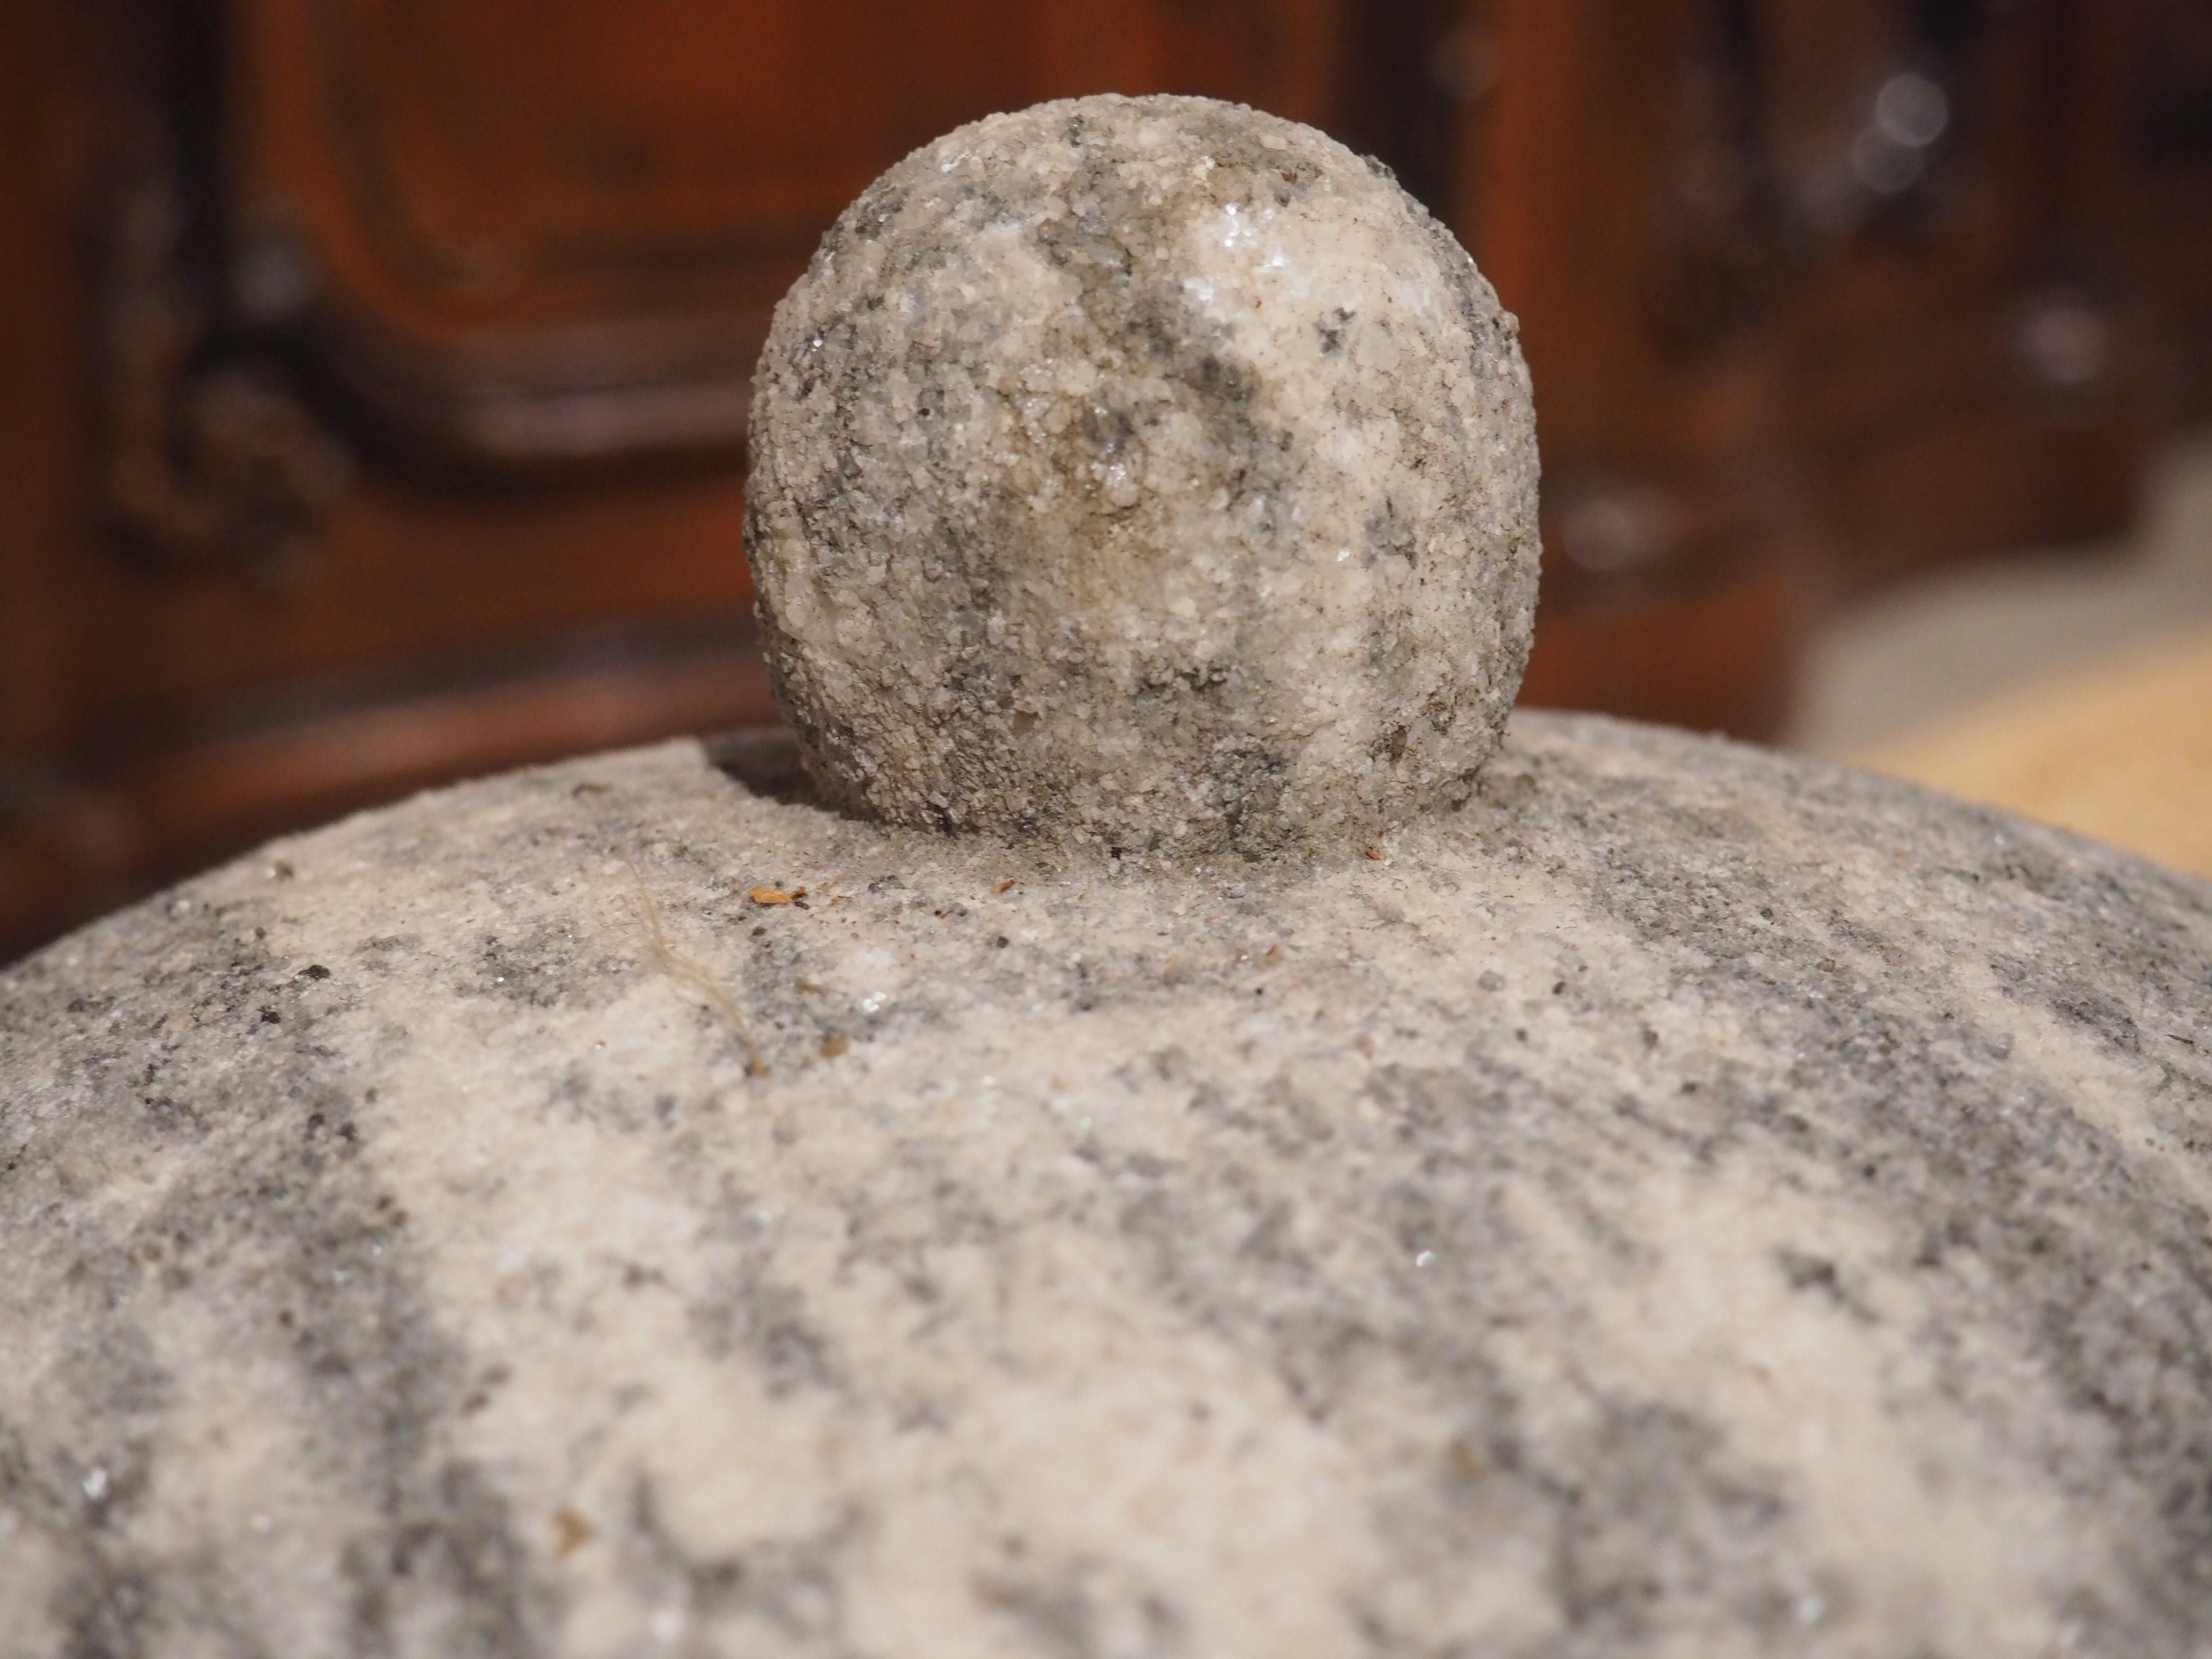 Diese Marmorkrone wurde in den 1800er Jahren in Italien handgeschnitzt. Der Marmor ist cremefarben mit einer faszinierenden grauen, gestreiften Aderung. Durch die jahrelange Patinabildung hat sich an einigen Stellen ein dunklerer Grauton gebildet,